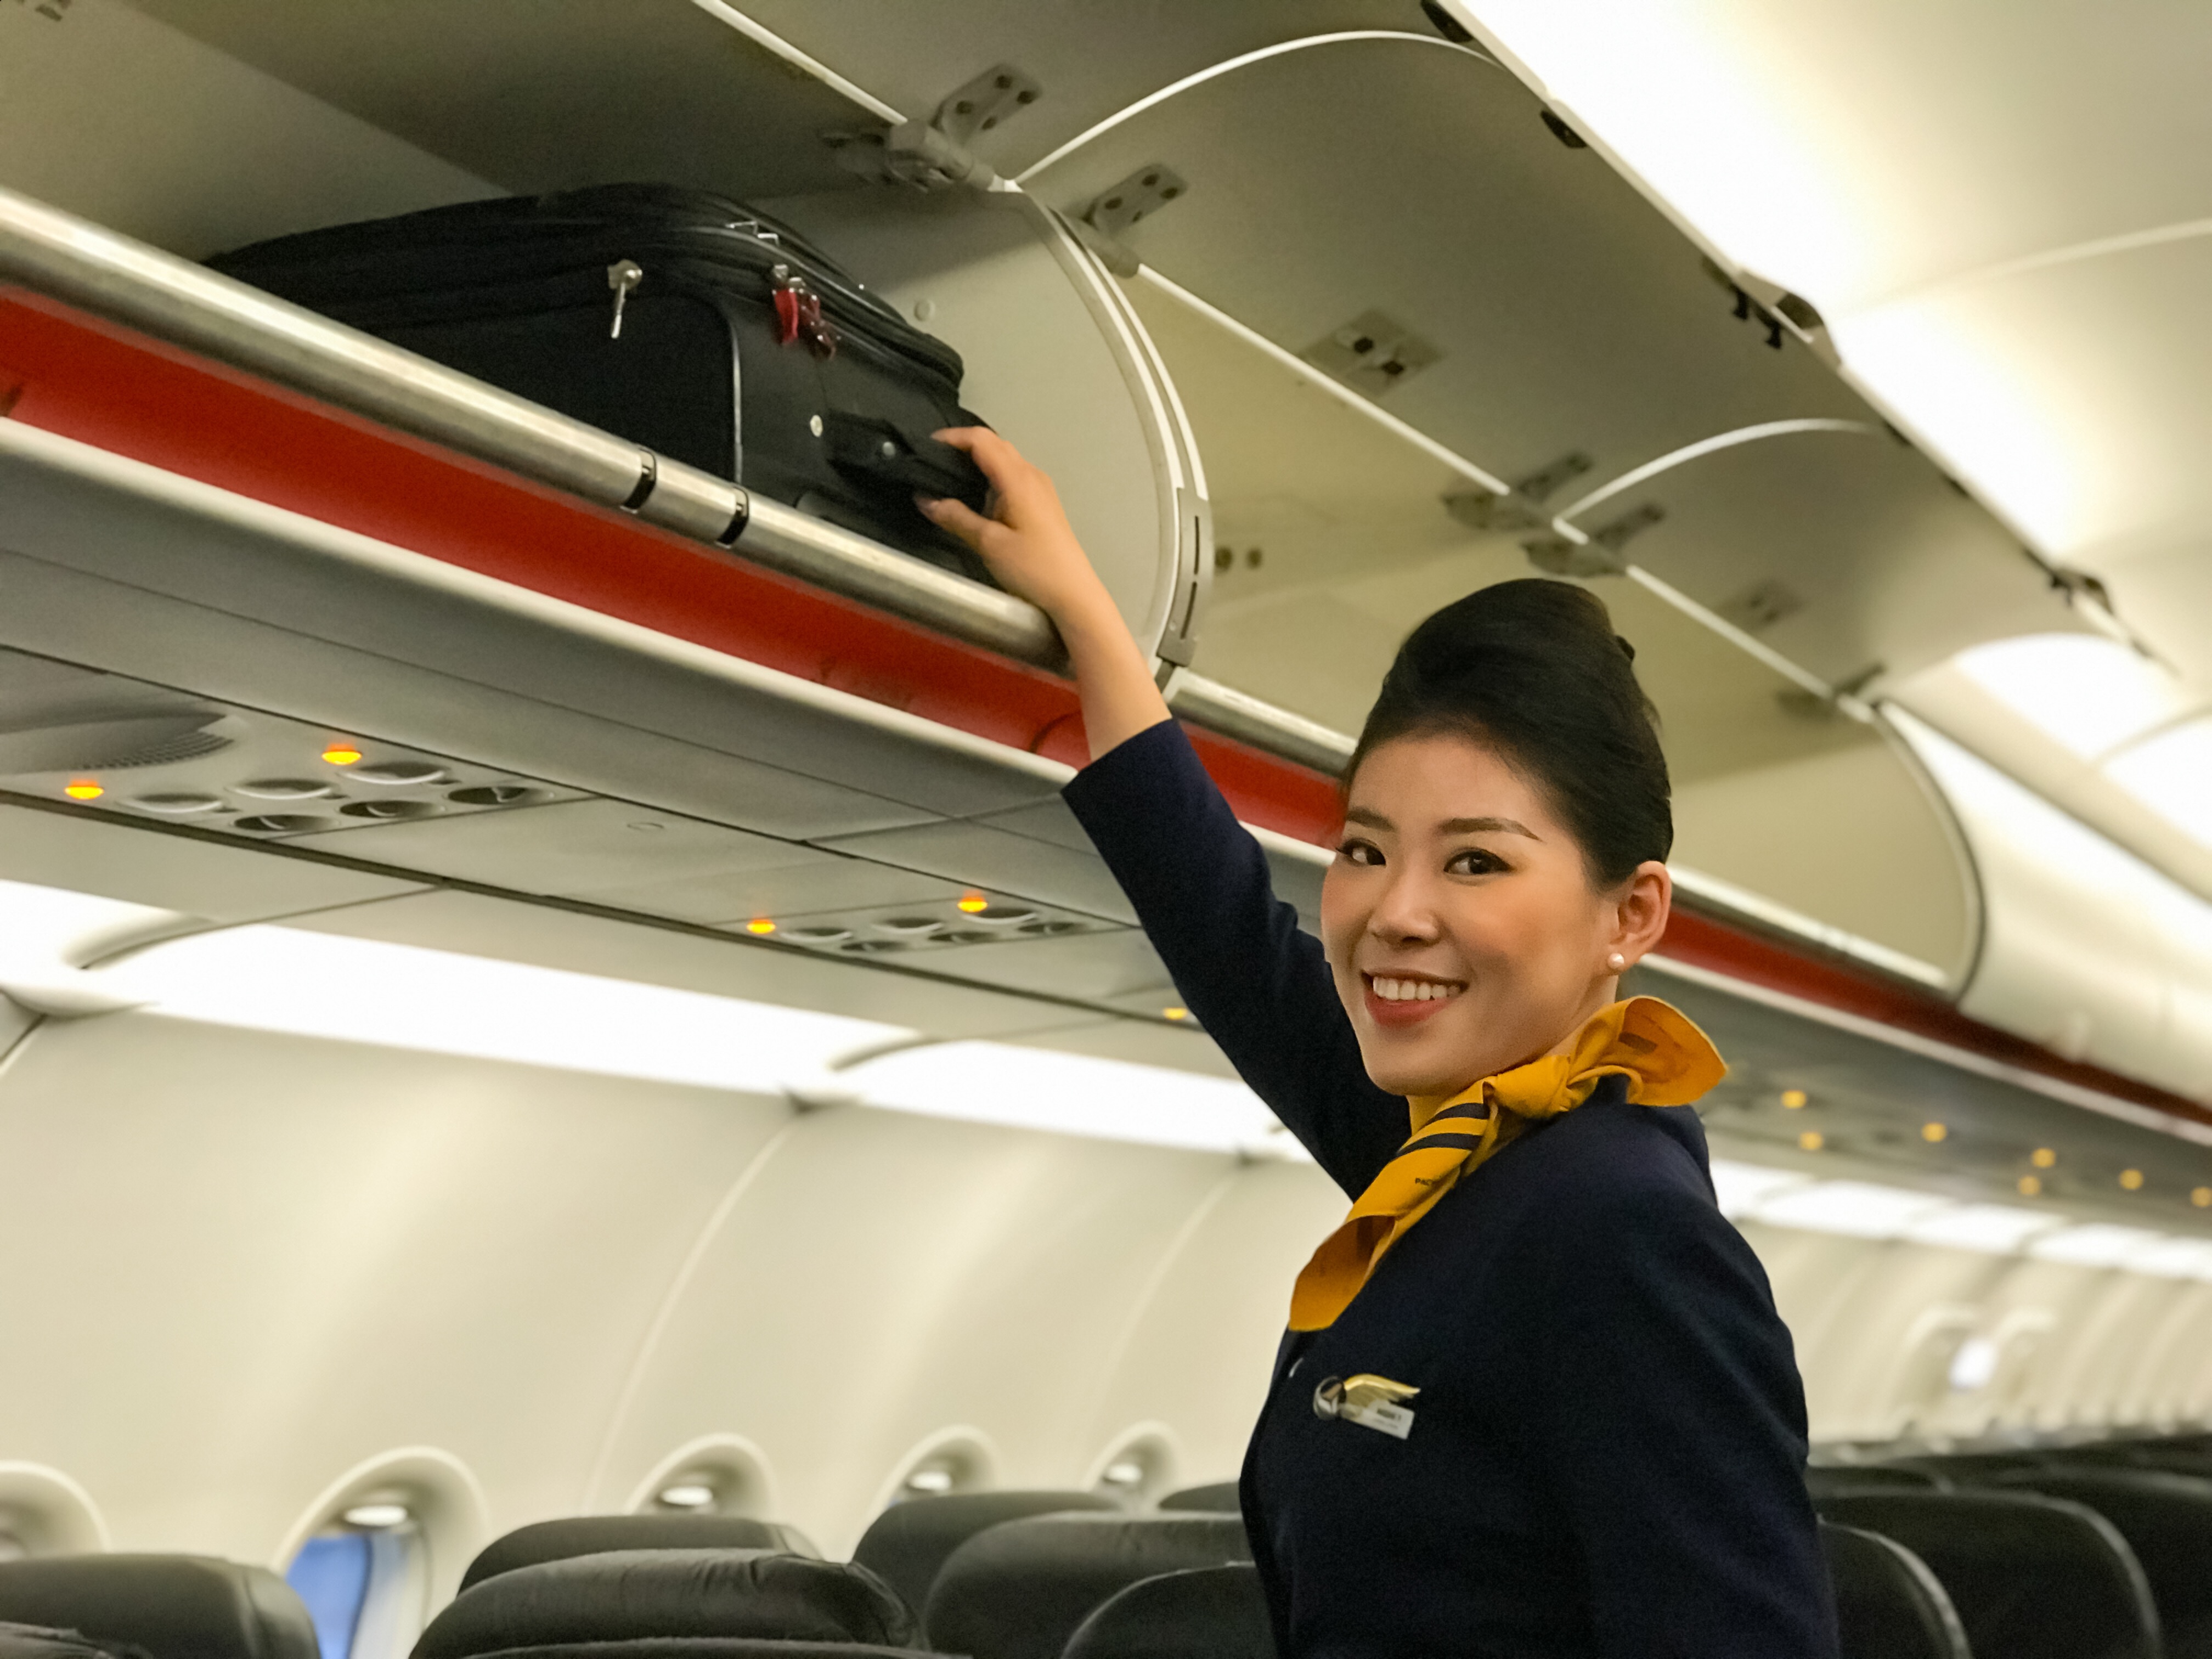 Đề xuất kỷ lục Mô hình máy bay bằng hoa lớn nhất của Jetstar Pacific  Airlines  HỘI KỶ LỤC GIA VIỆT NAM  TỔ CHỨC KỶ LỤC VIỆT NAMVIETKINGS